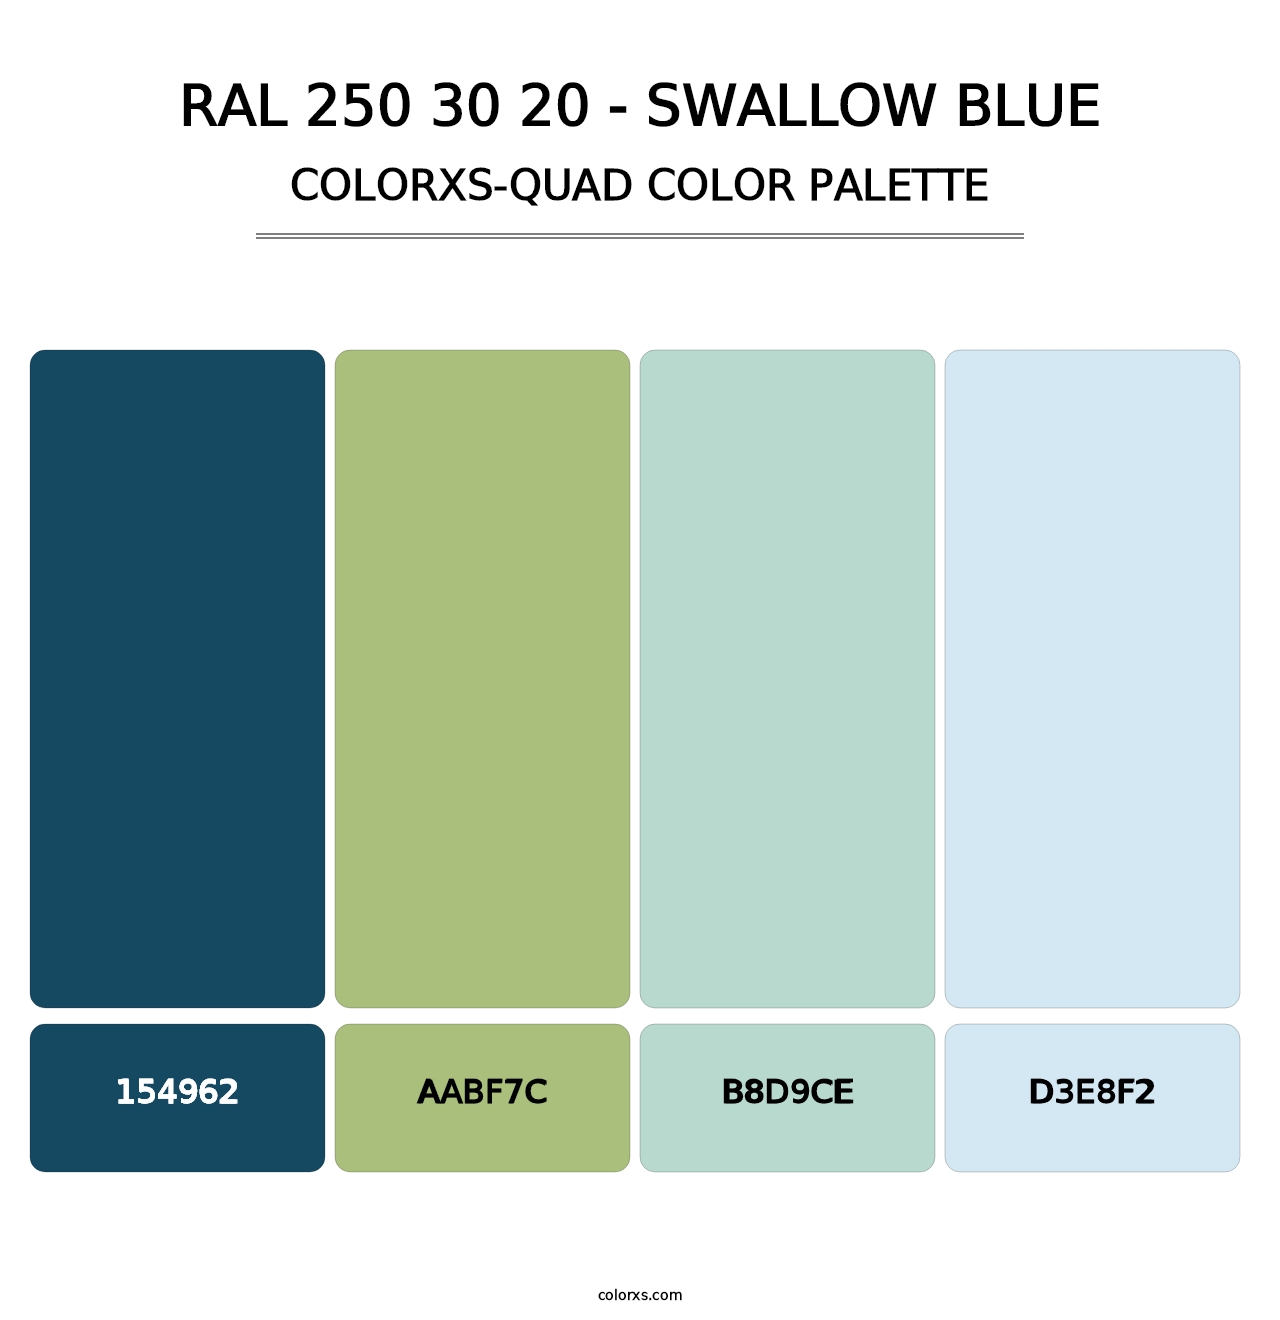 RAL 250 30 20 - Swallow Blue - Colorxs Quad Palette